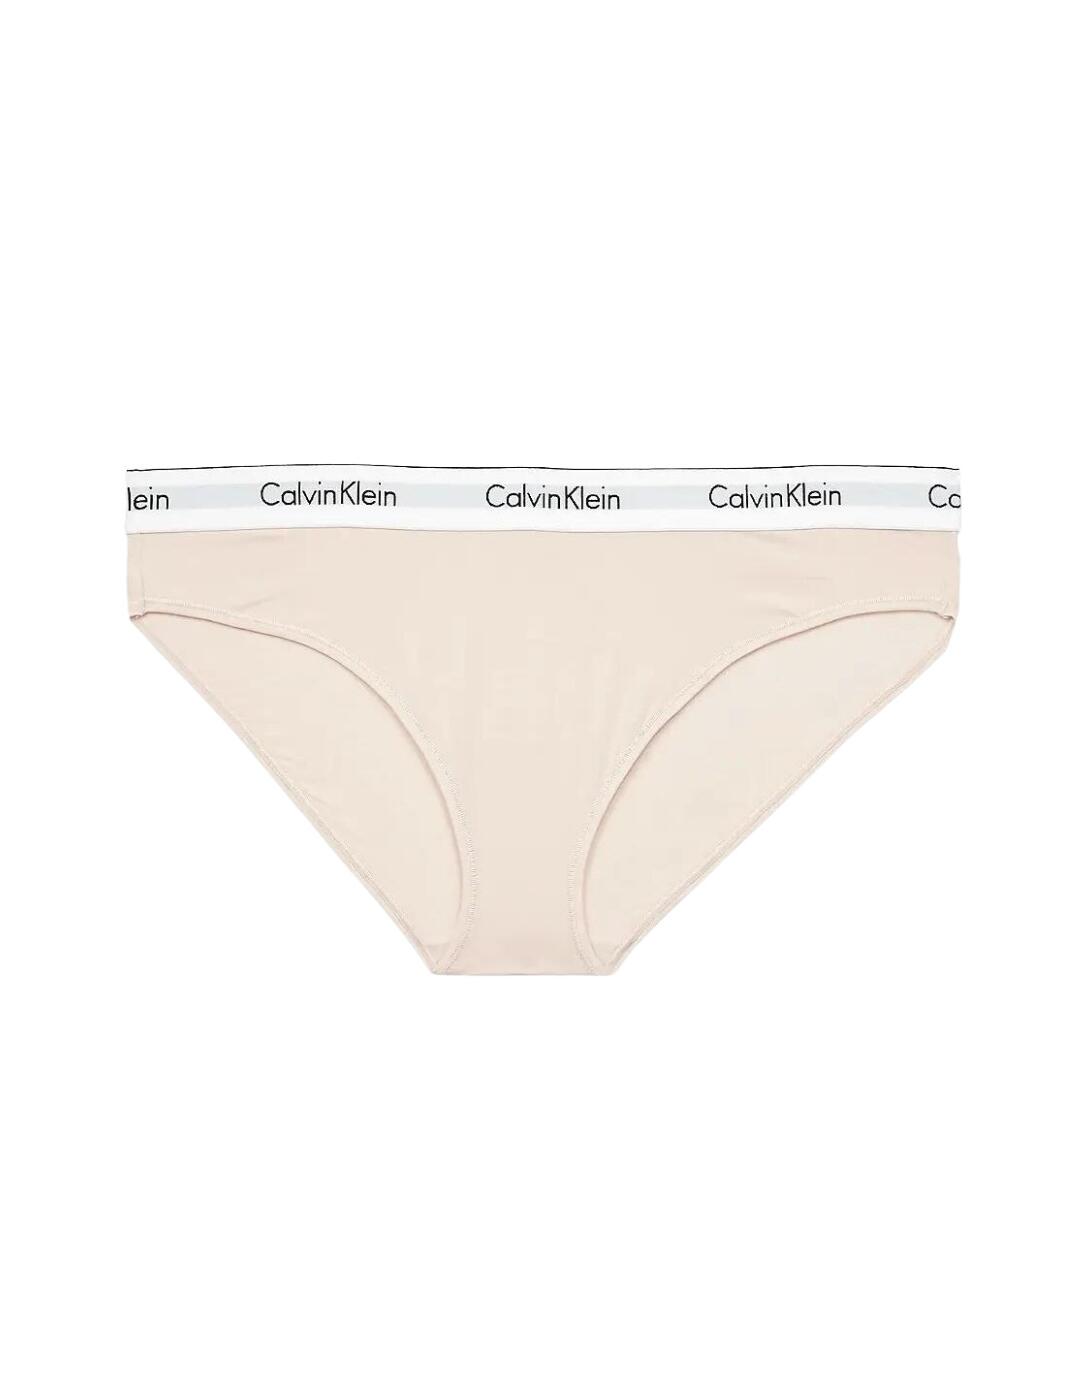 Calvin Klein Plus Size Modern Cotton bikini style briefs in beige